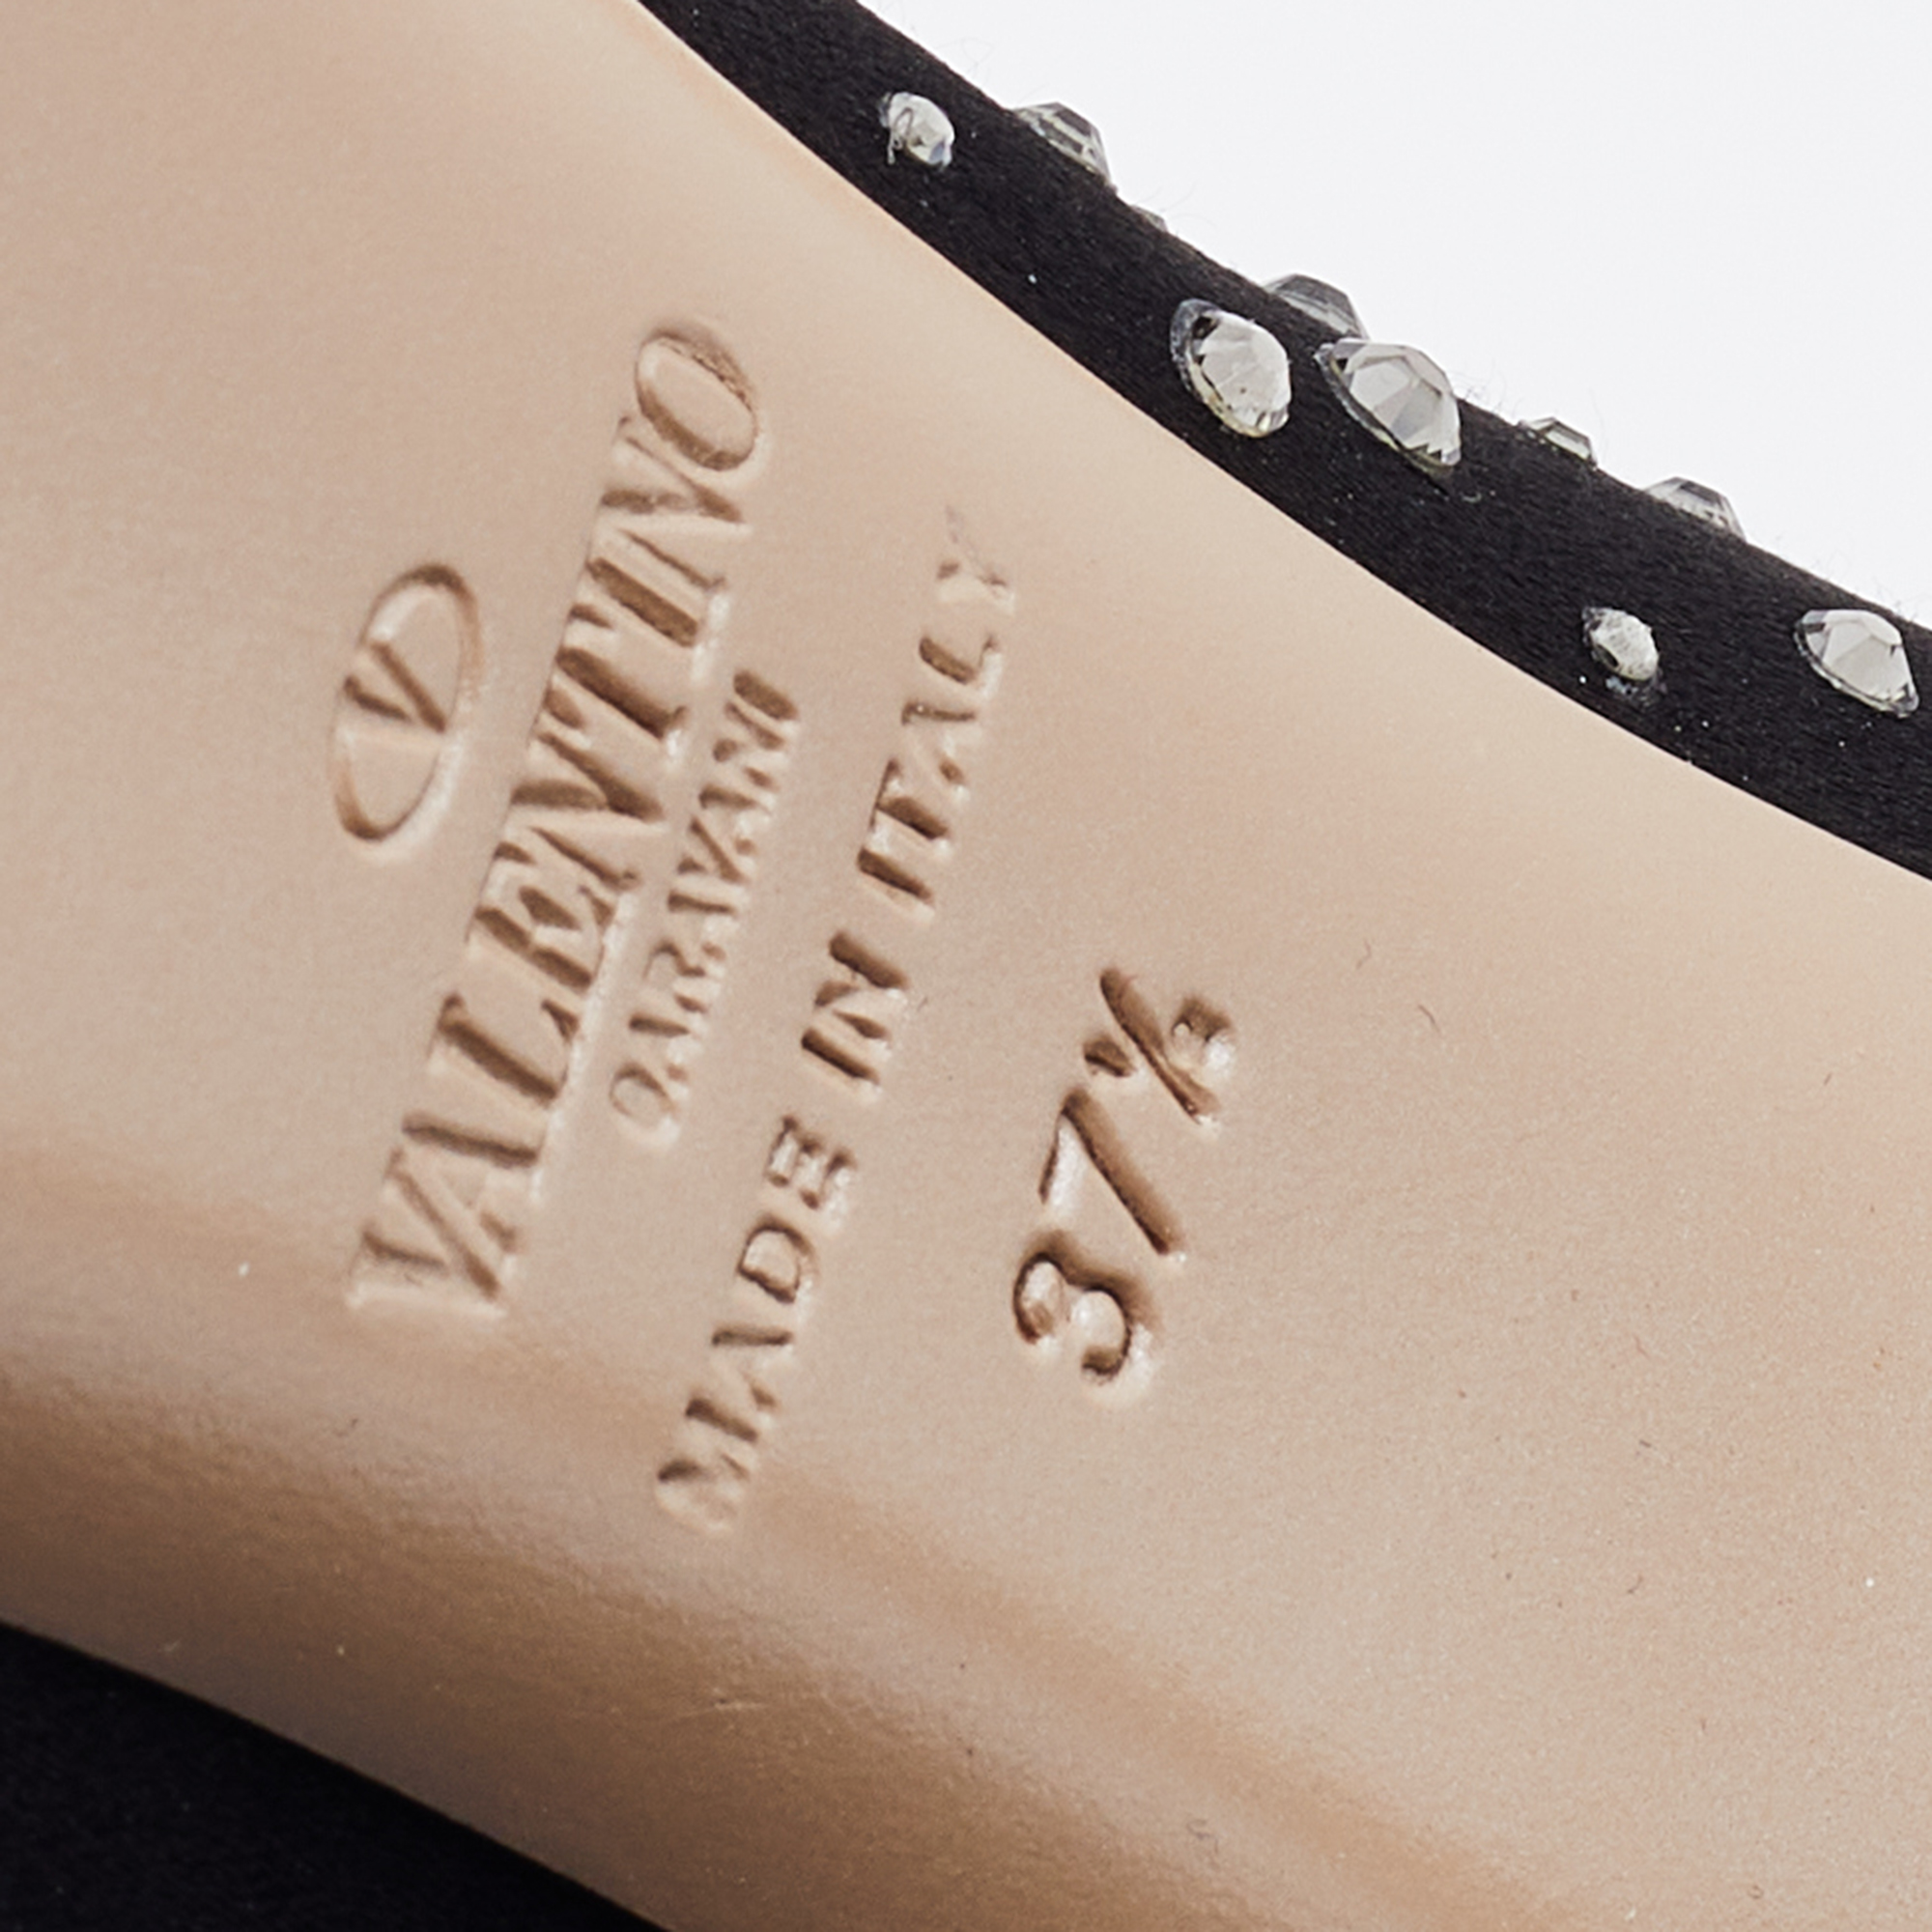 Valentino Black Satin And Mesh Crystal Embellished Platform Pumps Size 37.5